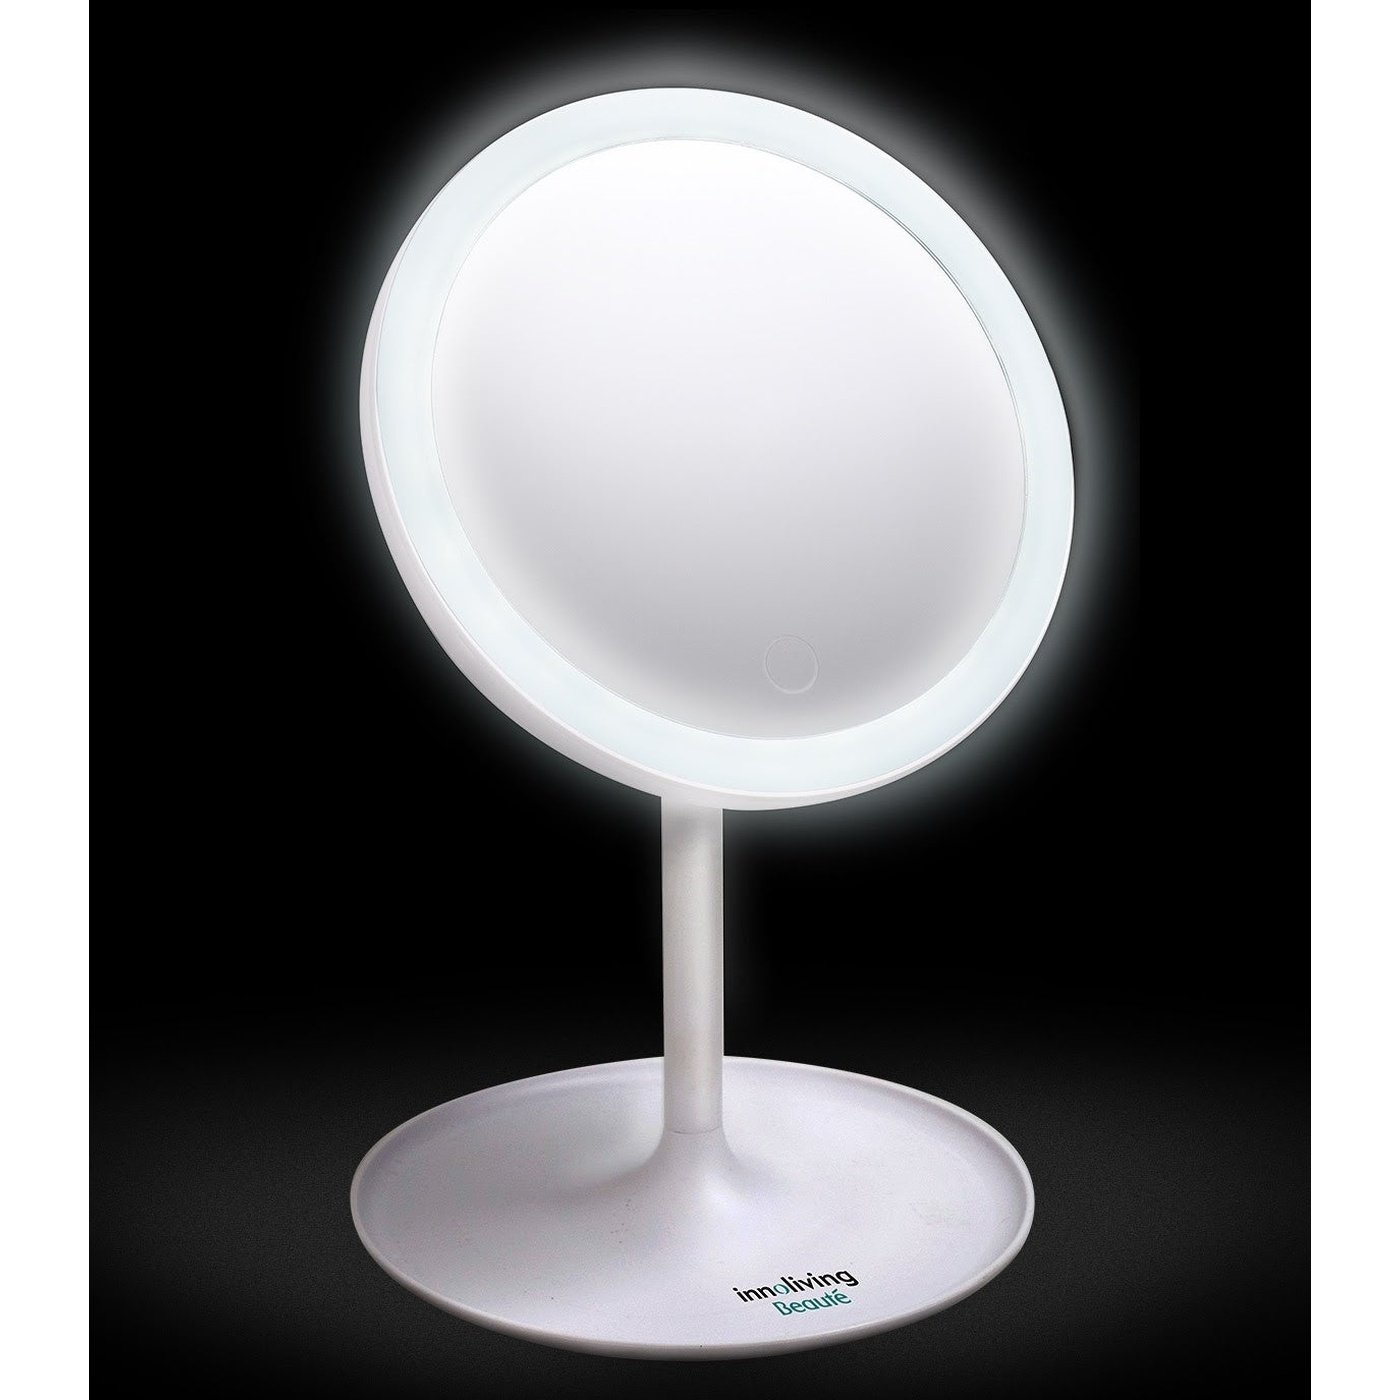 Specchio luminoso LED ruotabile 180° visione reale luminosità regolabile, Innoliving INN-803